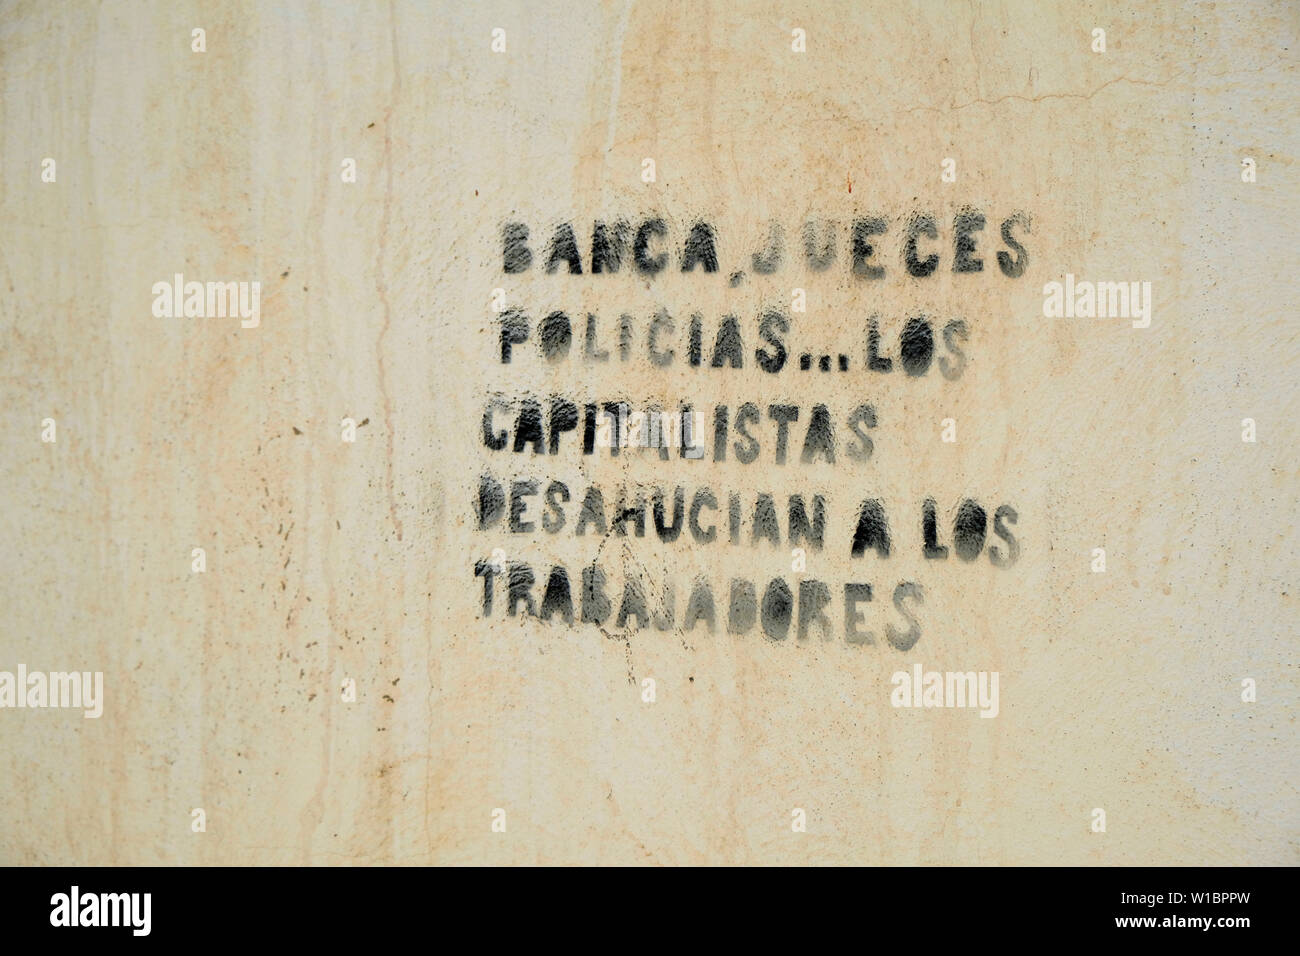 Politischer protest Stencil graffiti Ausdruck ein anti Richter, Polizei und Kapitalisten Sicht zugunsten der besitzlosen Arbeiter und Arbeit; Granada, Spanien. Stockfoto